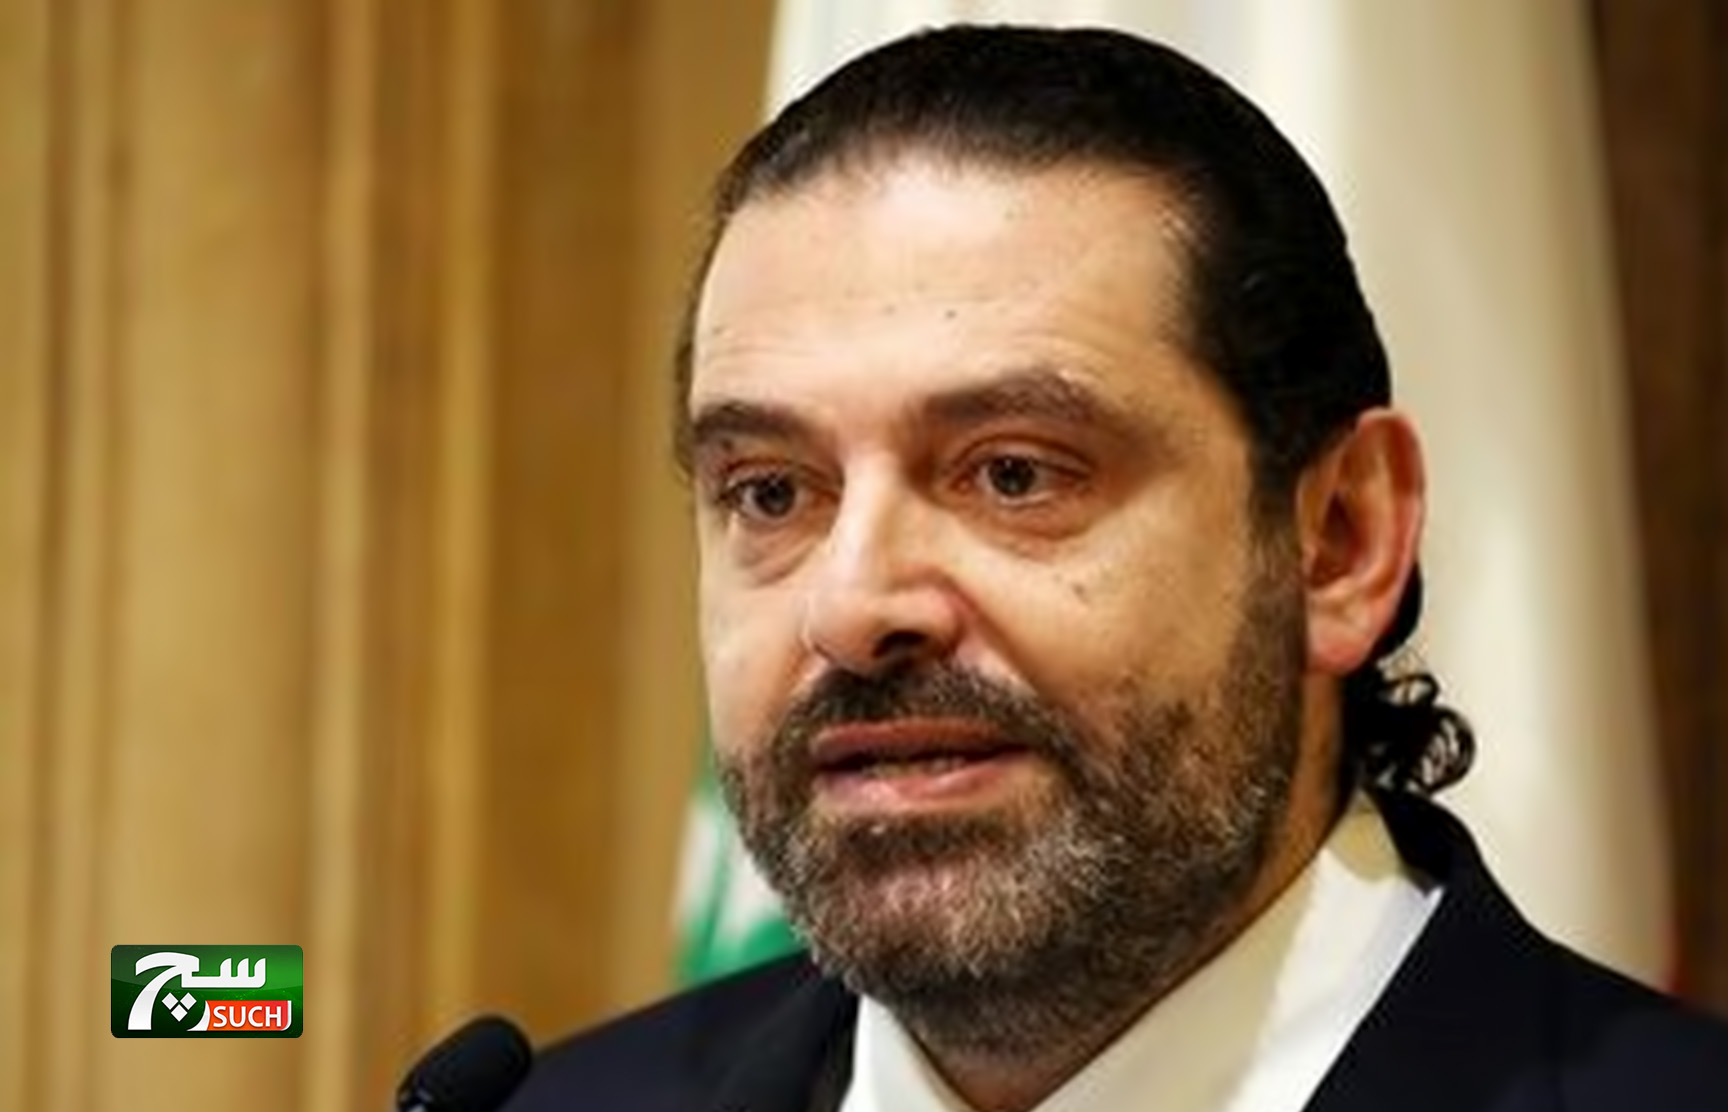  رئيس وزراء لبنان:  العقوبات الأمريكية لن تؤثر على الحكومة